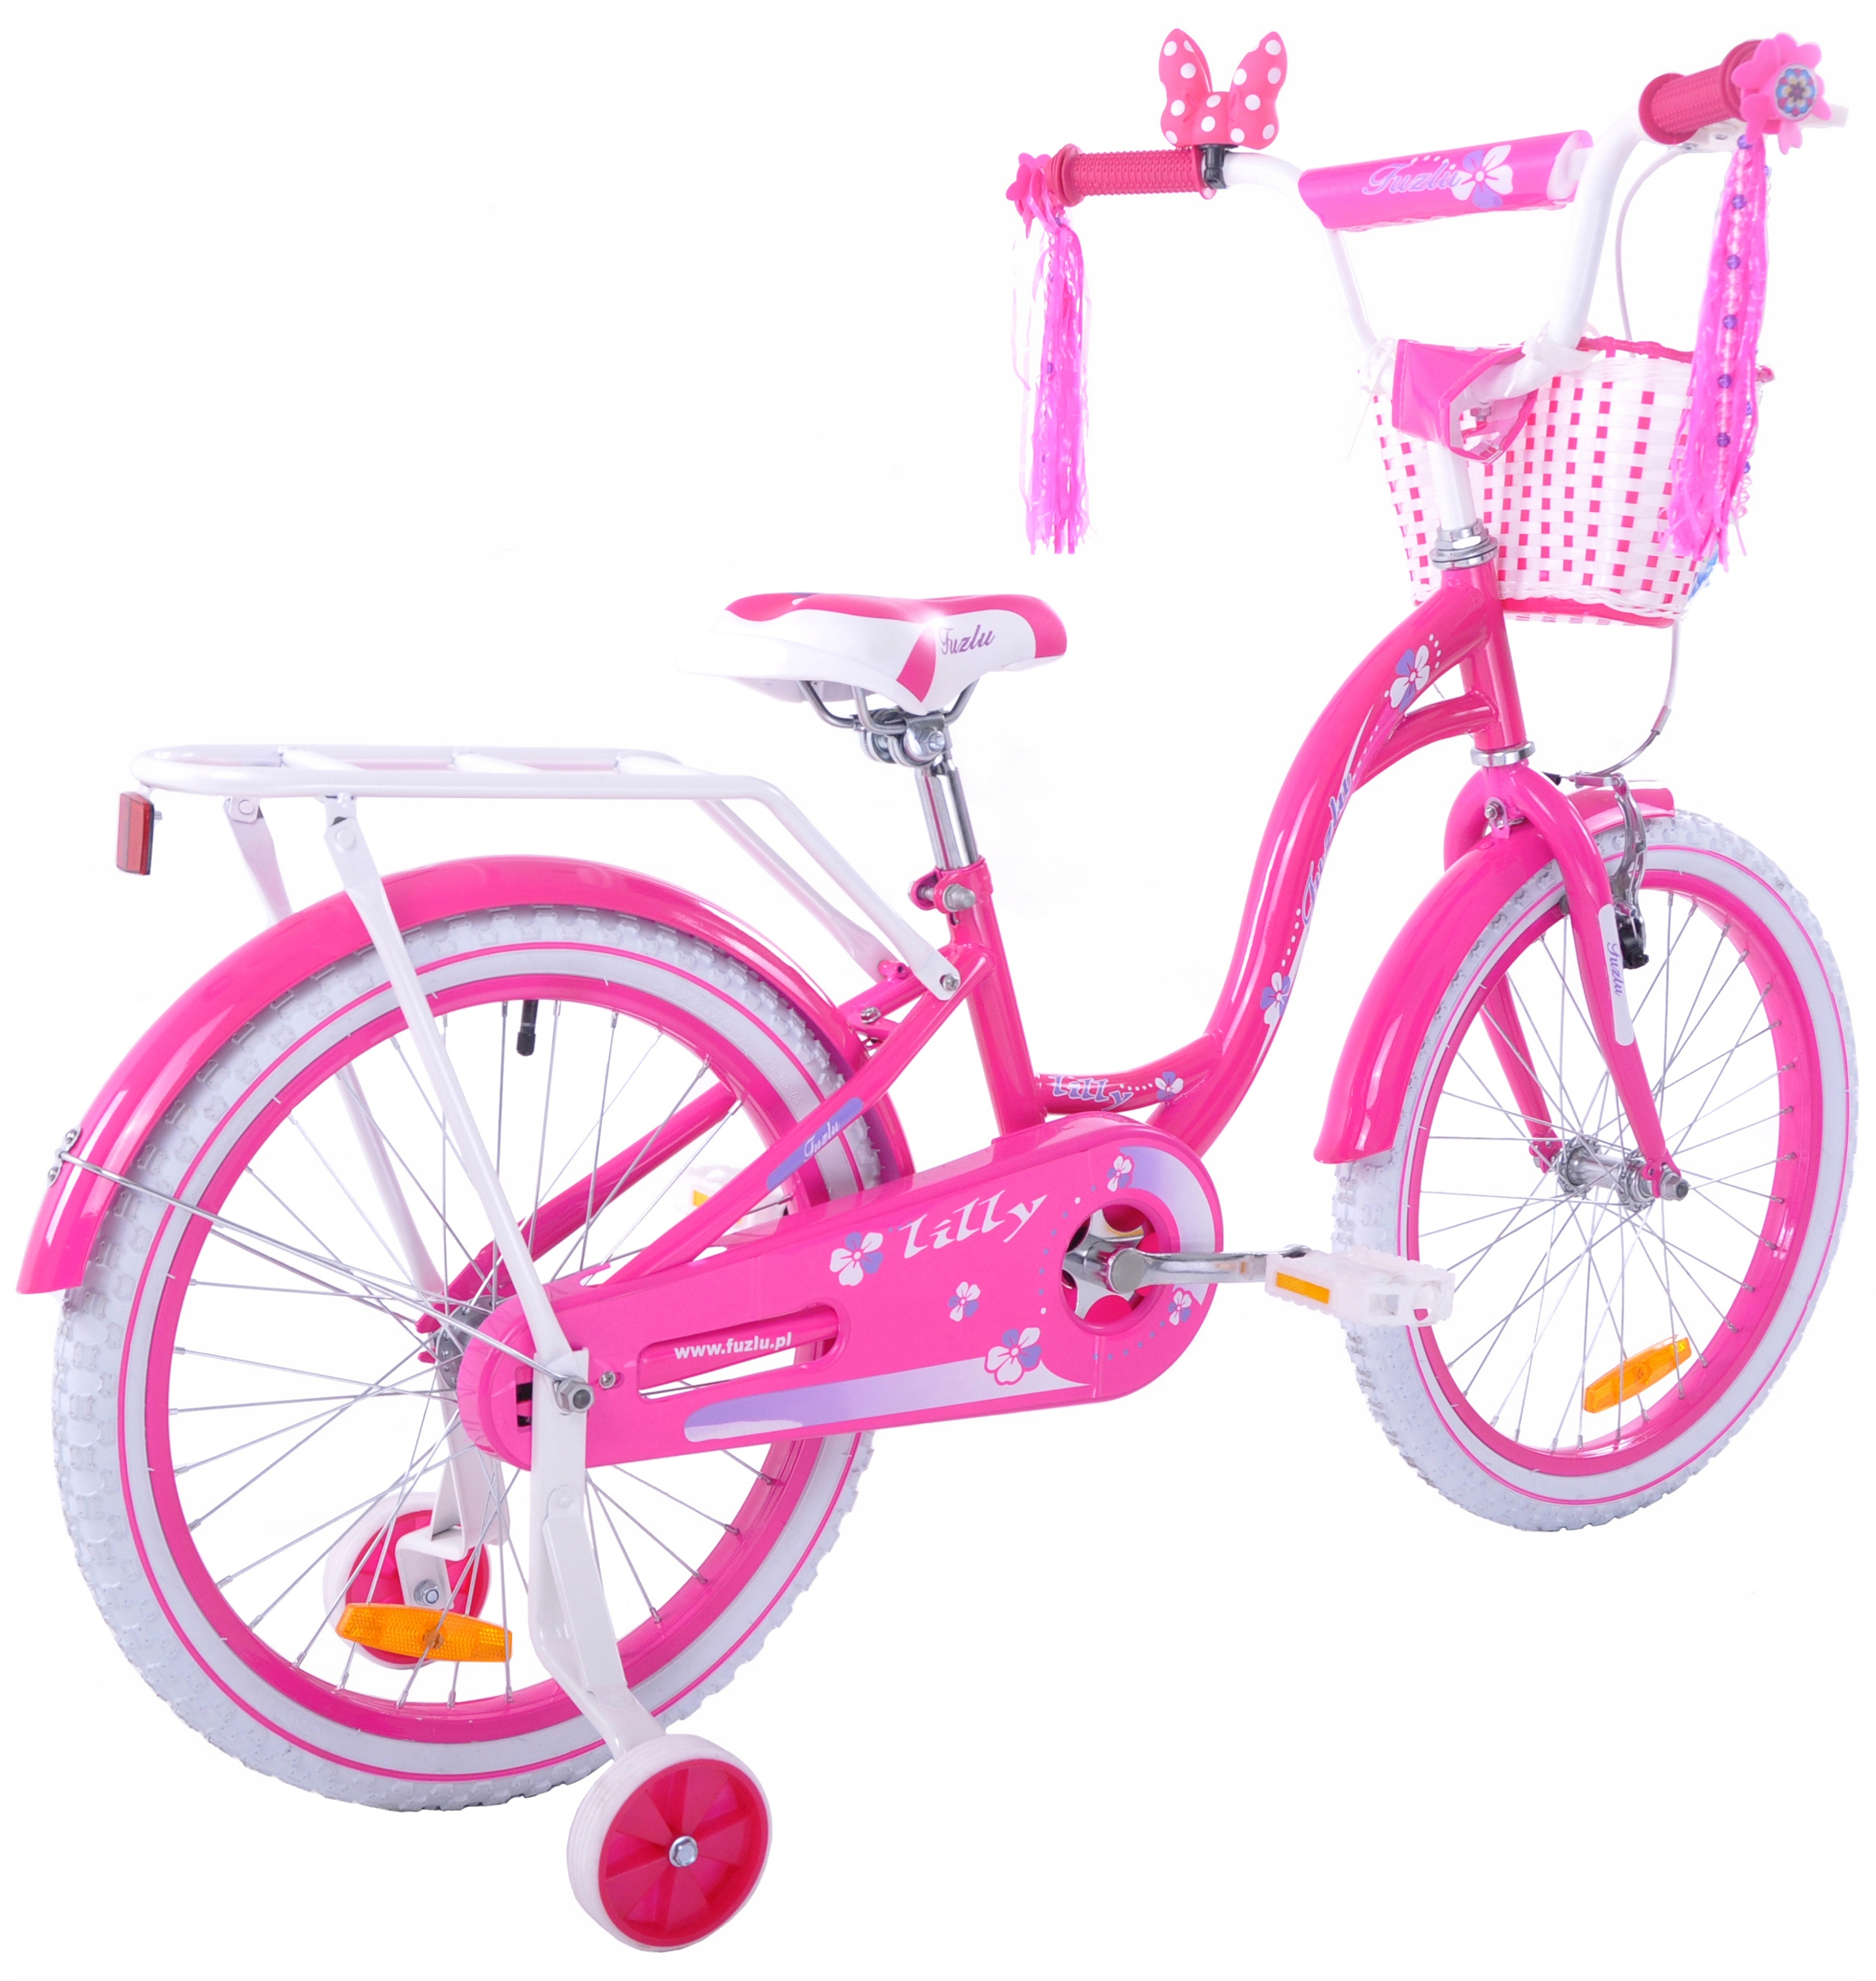 Купить детский велосипед для девочки авито. Велосипед для девочки. Велосипед для девочки 7 лет. Велосипед розовый для девочки 5 лет. Велосипед для девочки 8 лет.